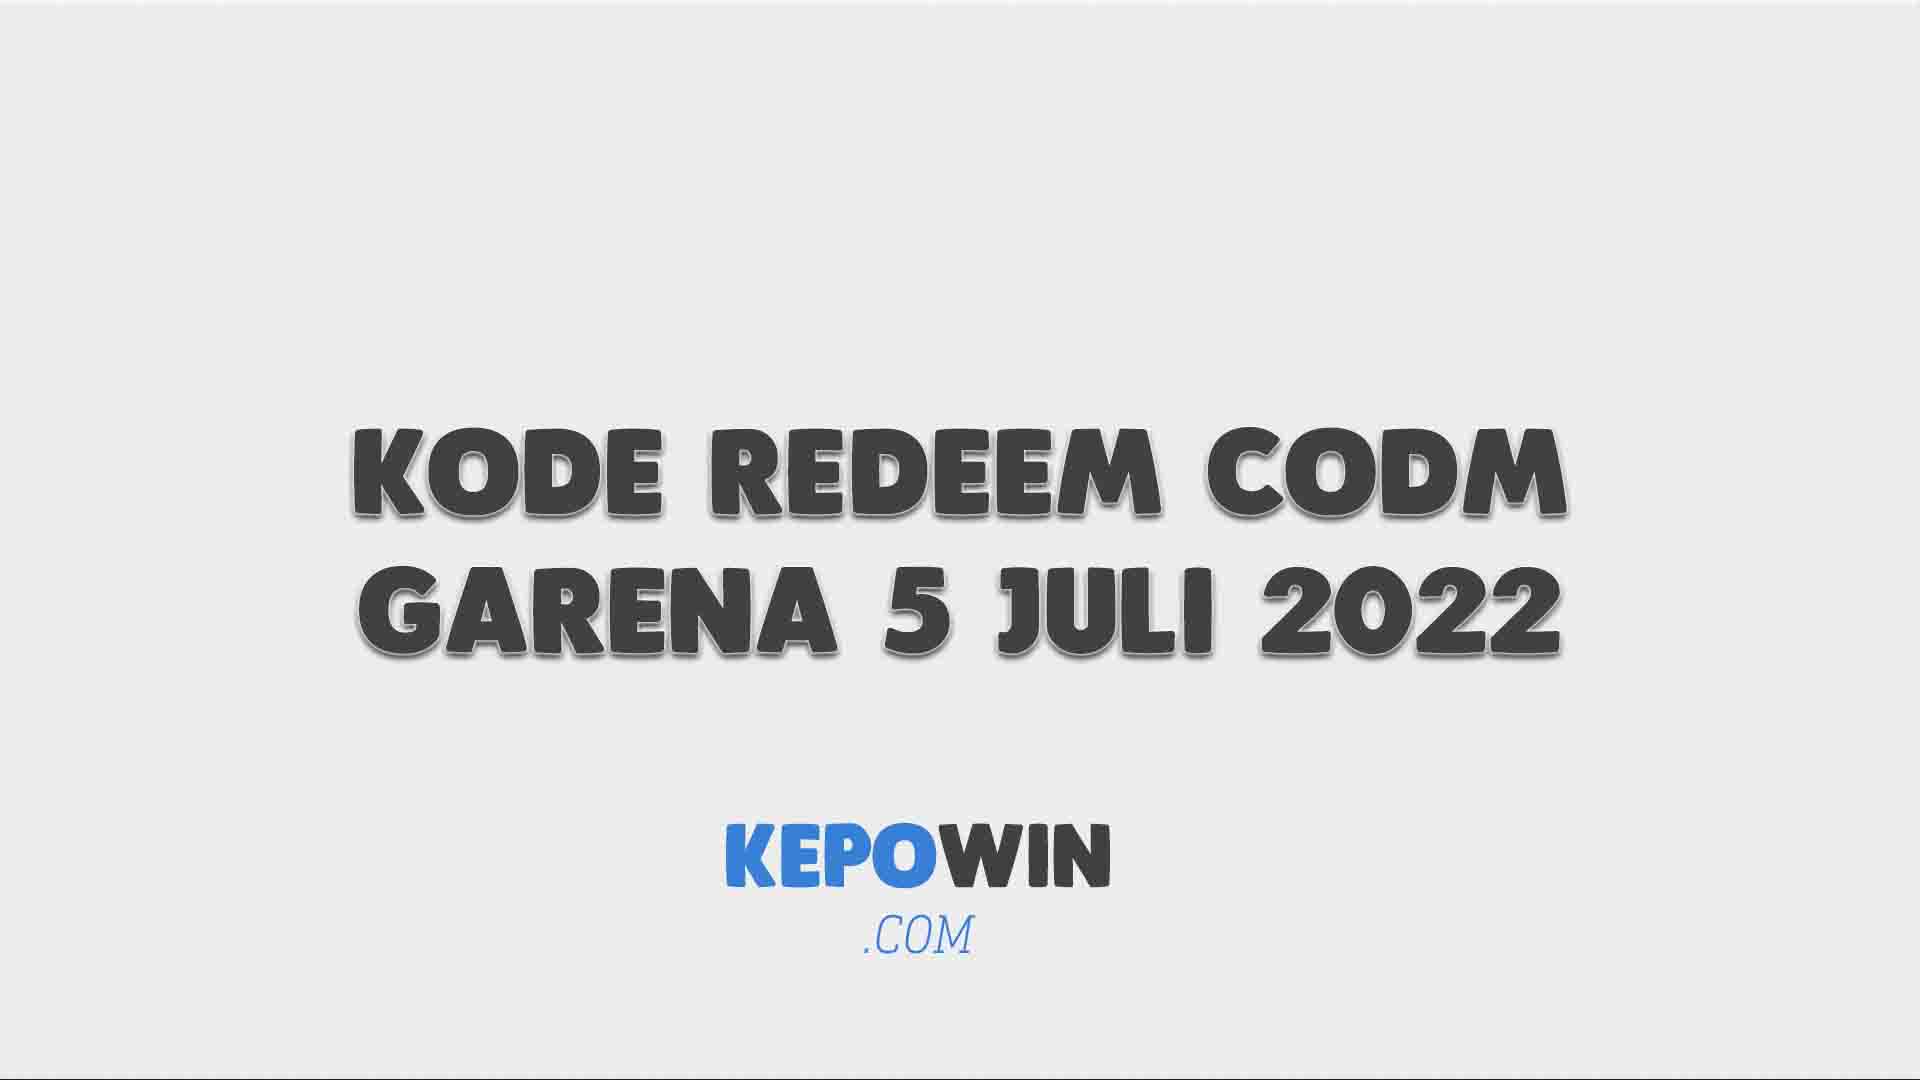 Kode Redeem CODM Garena 5 Juli 2022